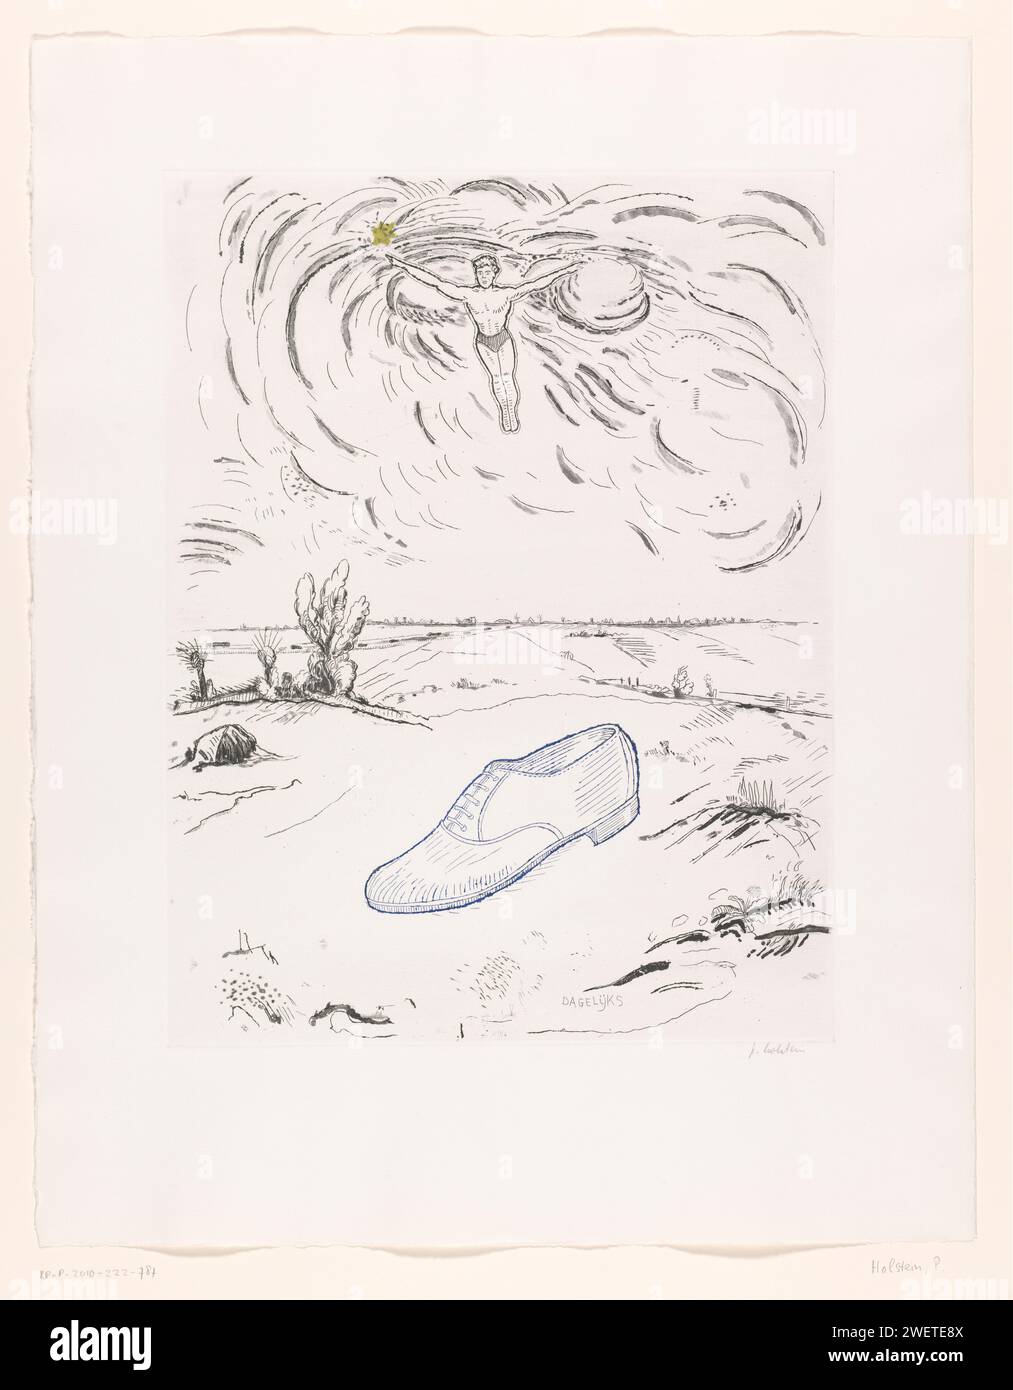 La chaussure idéale, Pieter Holstein, c. 1986 imprimer Chaussure bleue à lacets dans le paysage, au-dessus d'un homme flottant avec les bras écartés. gravure du papier Banque D'Images